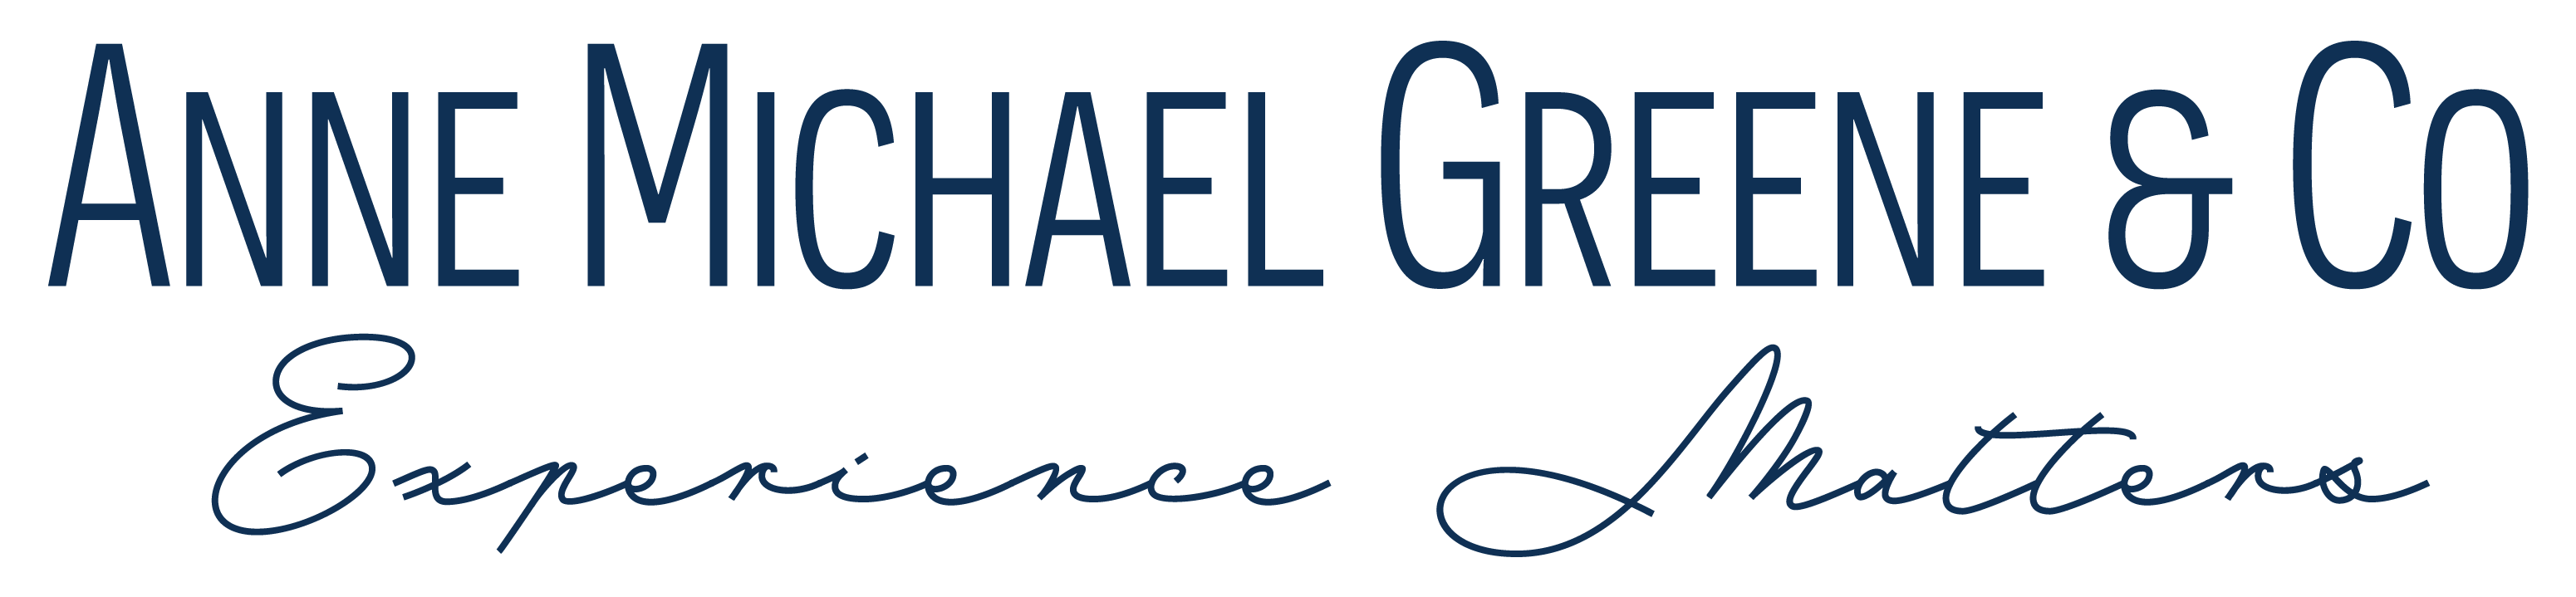 Anne Michael Green & Co logo